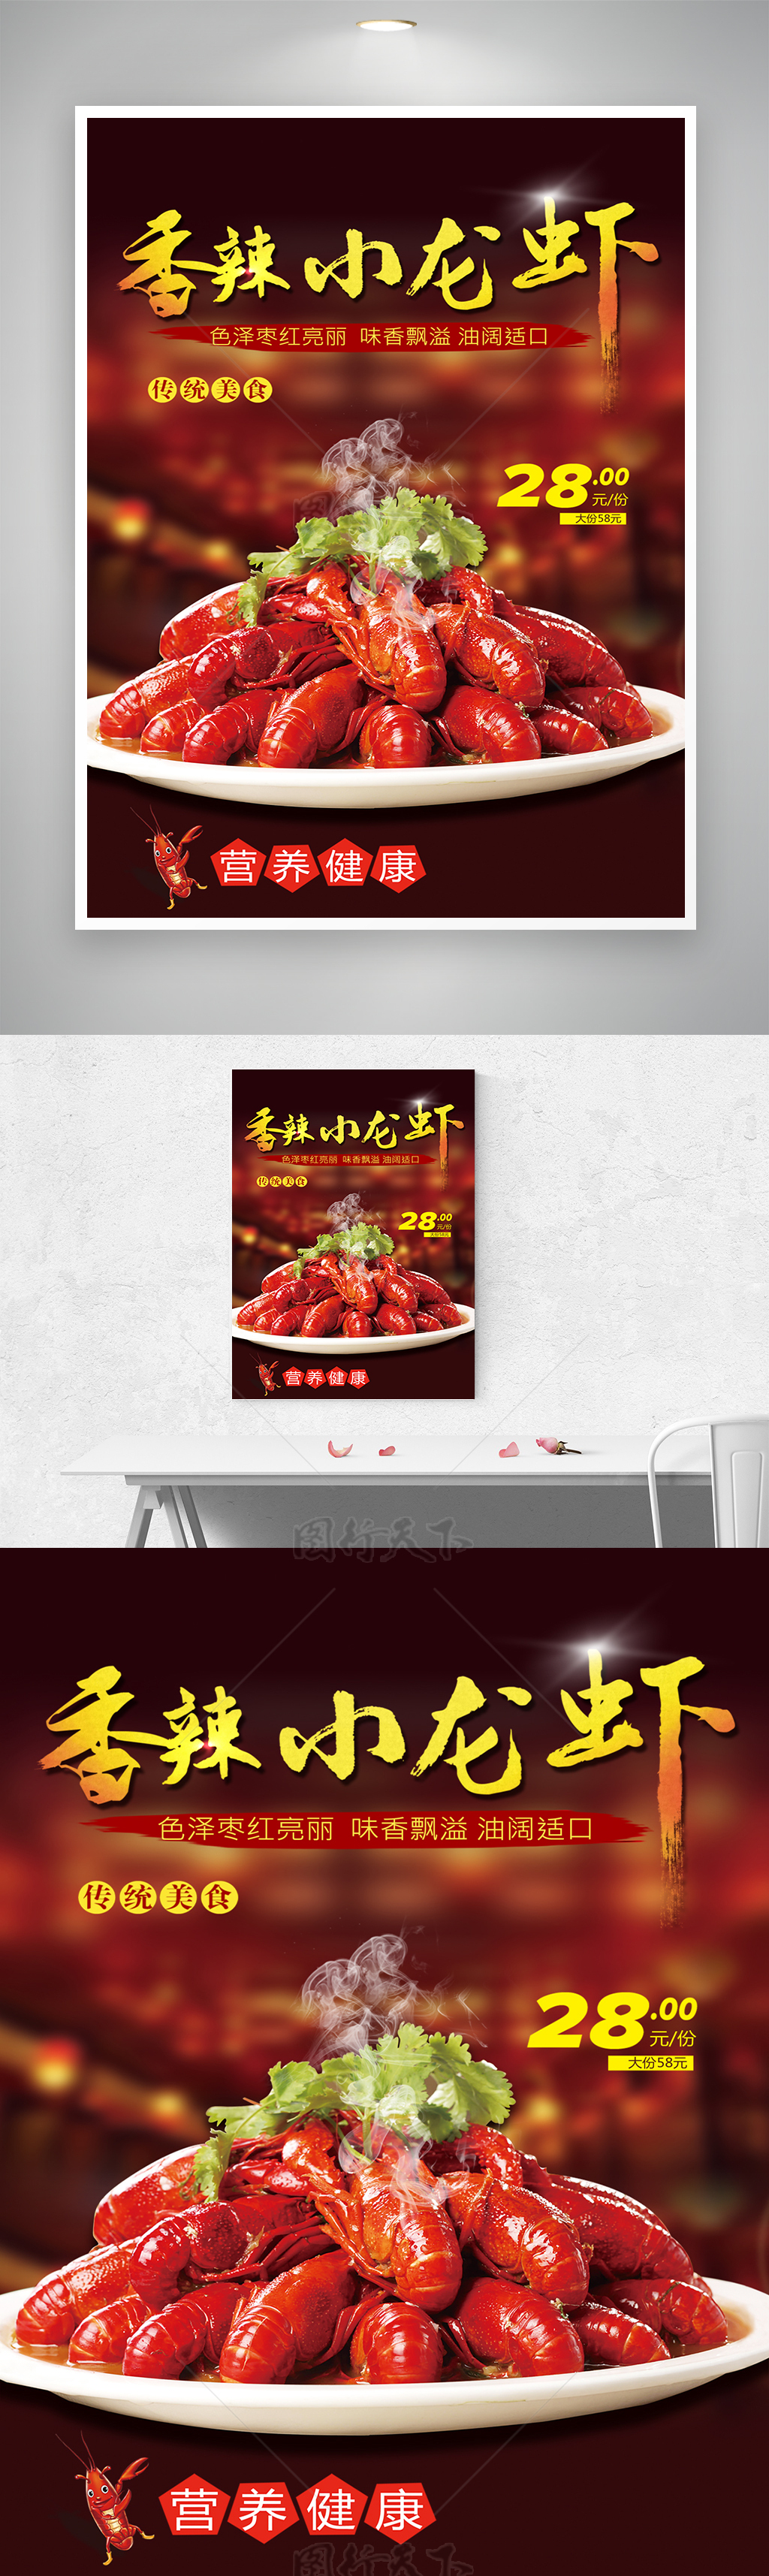 麻辣小龙虾菜单促销活动宣传海报